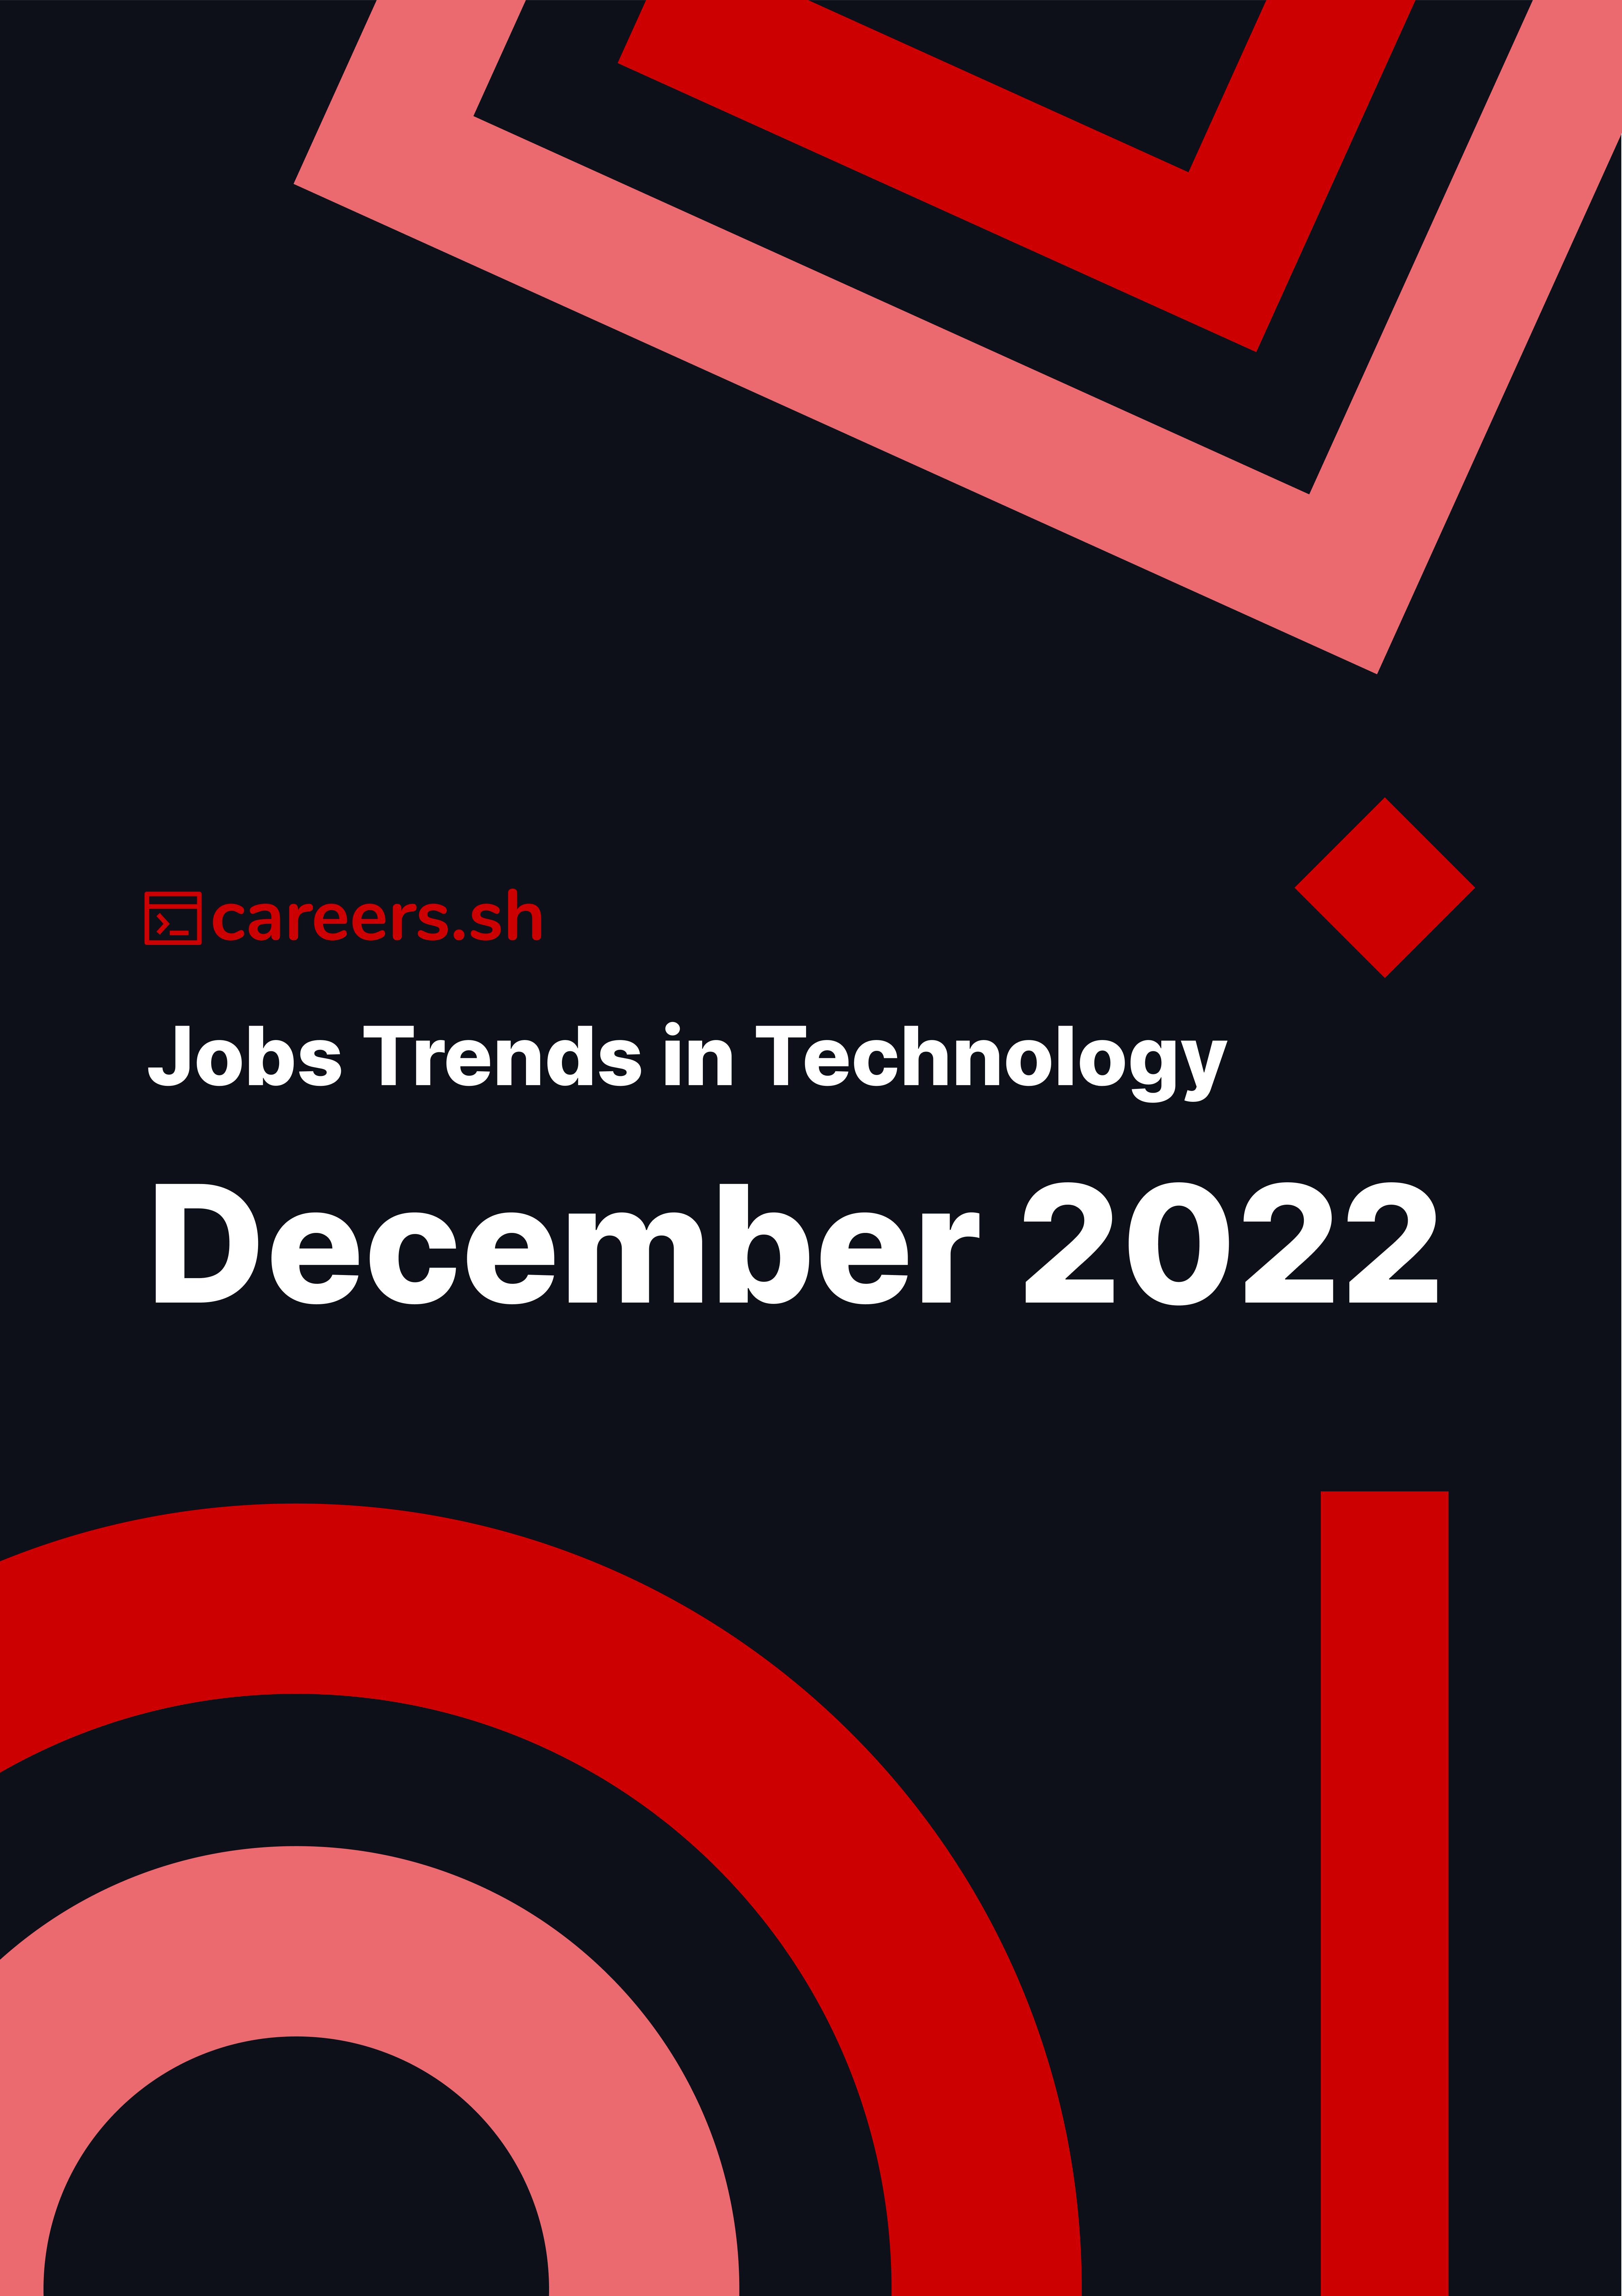 Careers.sh - December 2022